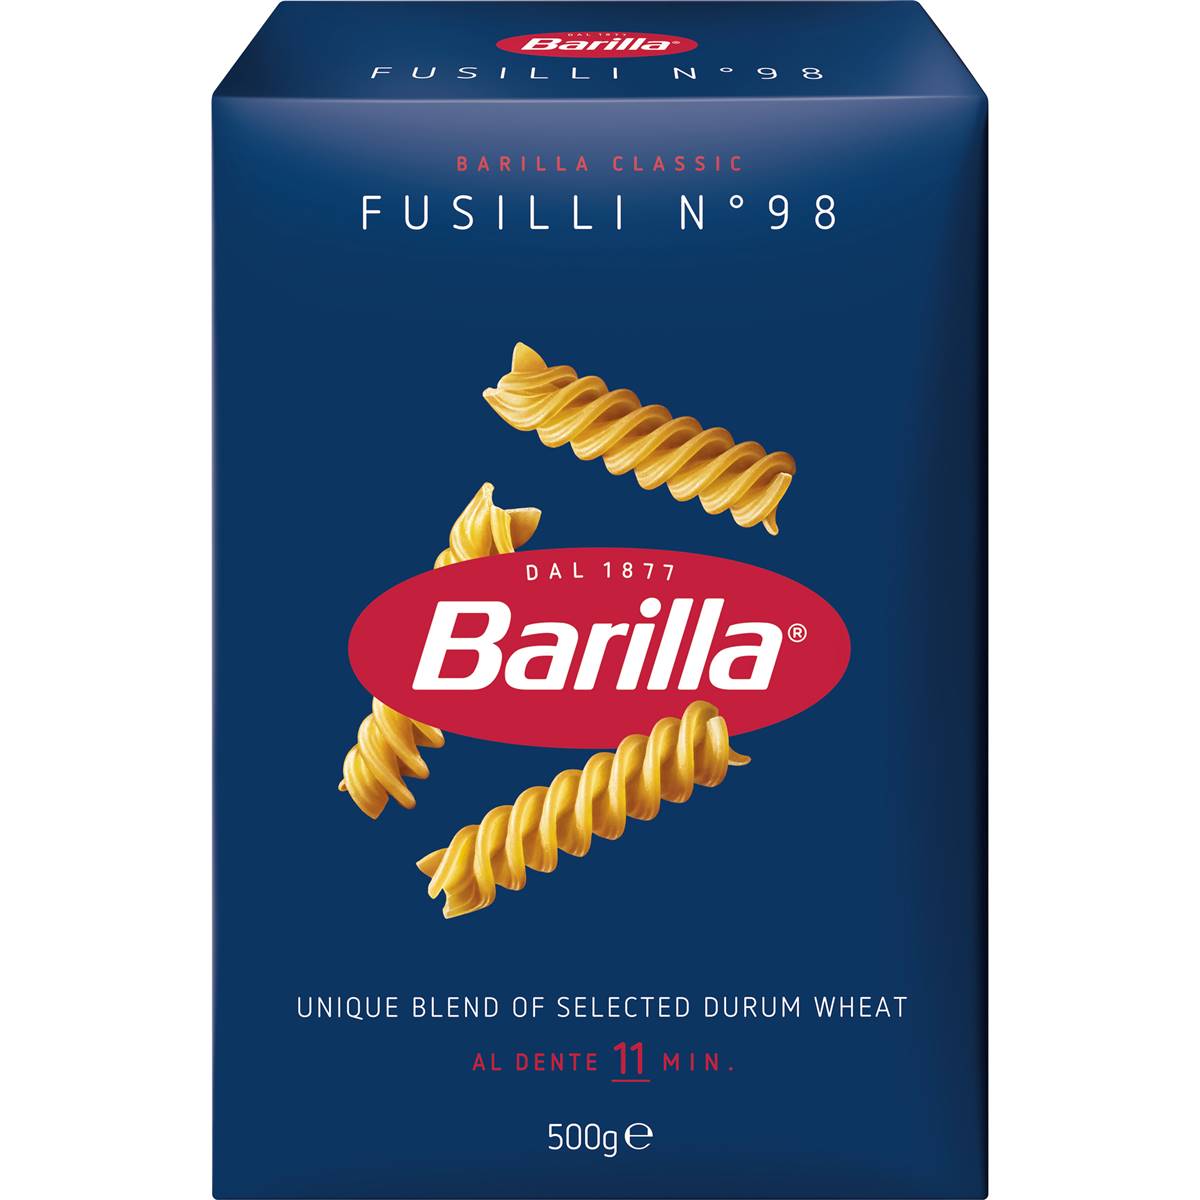 Calories in Barilla Pasta Fusilli Pasta No 98